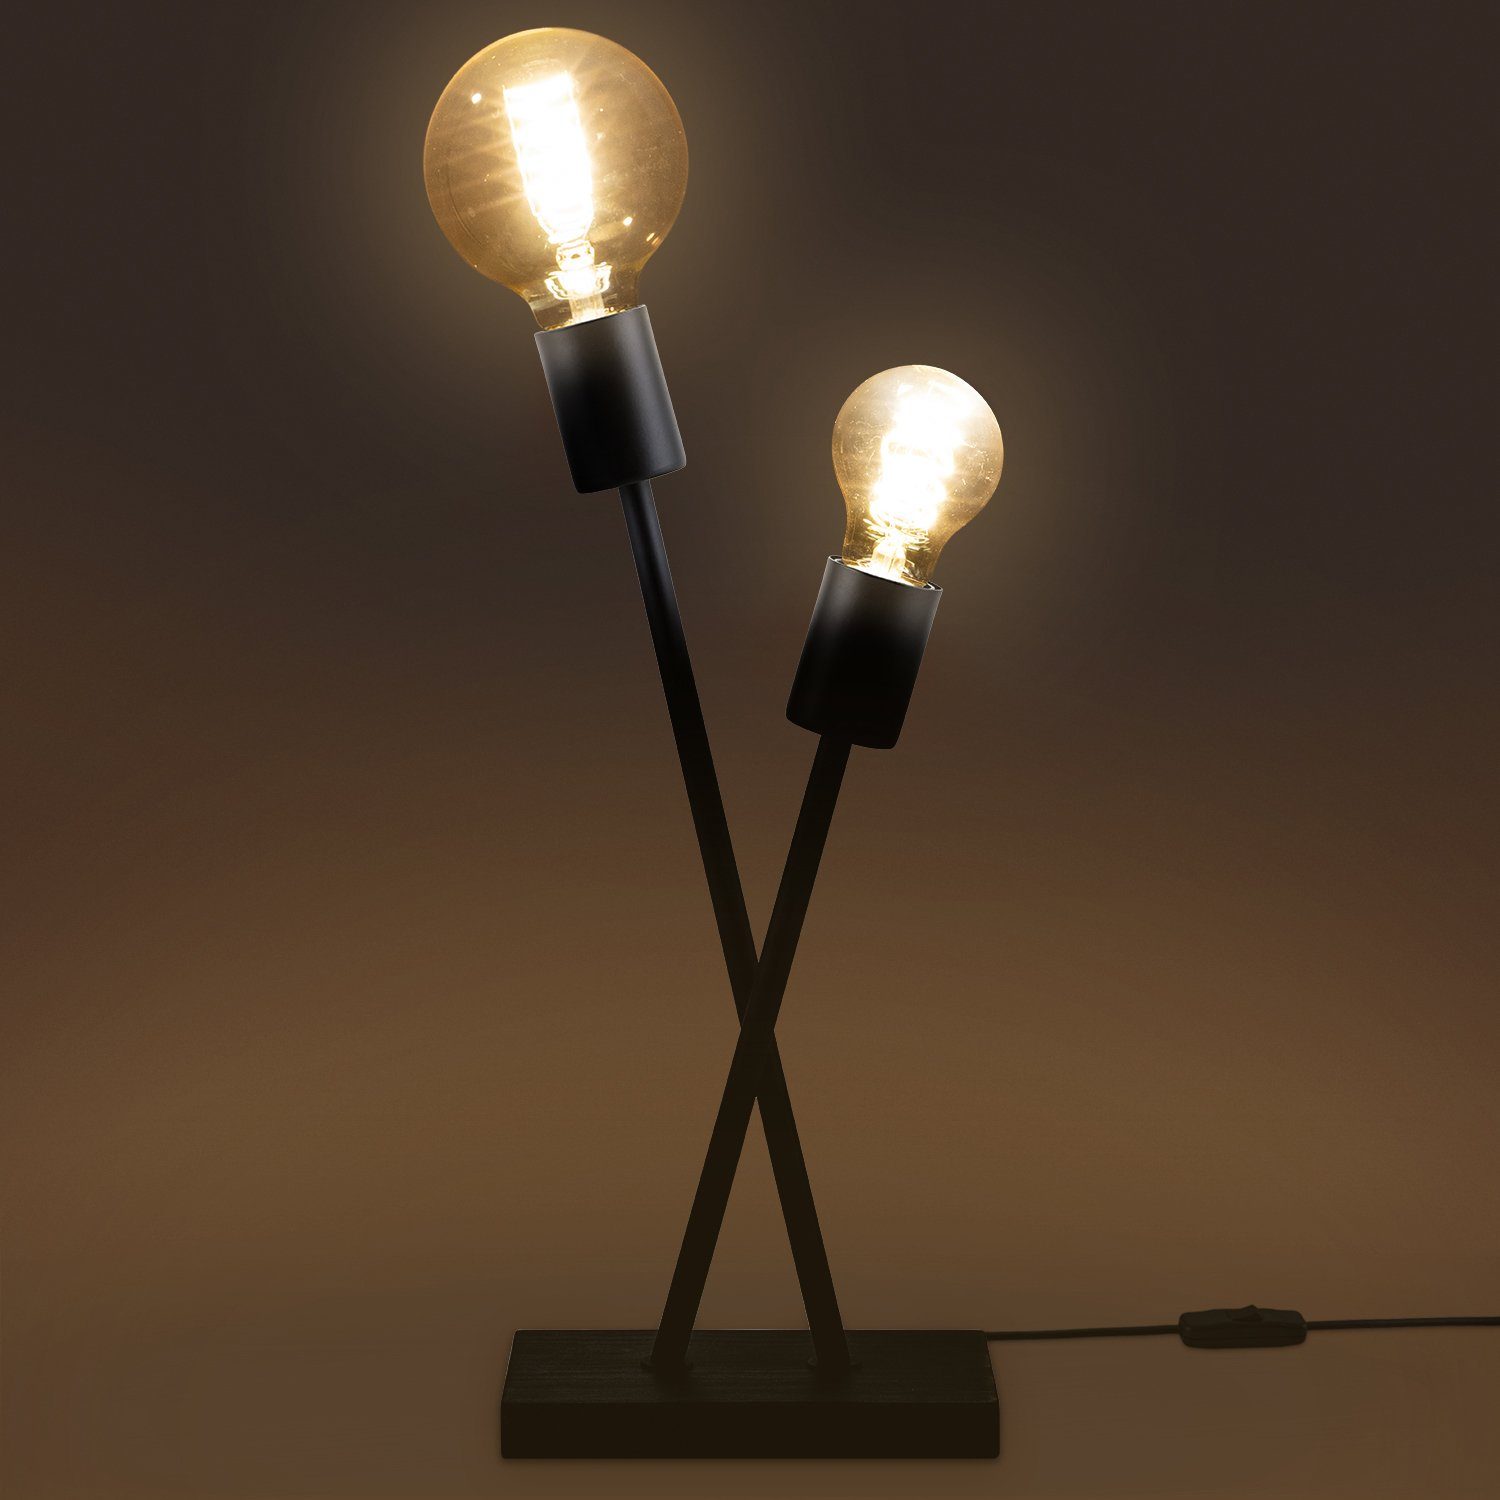 Design Home Industrial ohne Tischleuchte Stehlampe Leuchtmittel, Wohnzimmer Paco E27 Lampe Vintage Retro IKS, LED